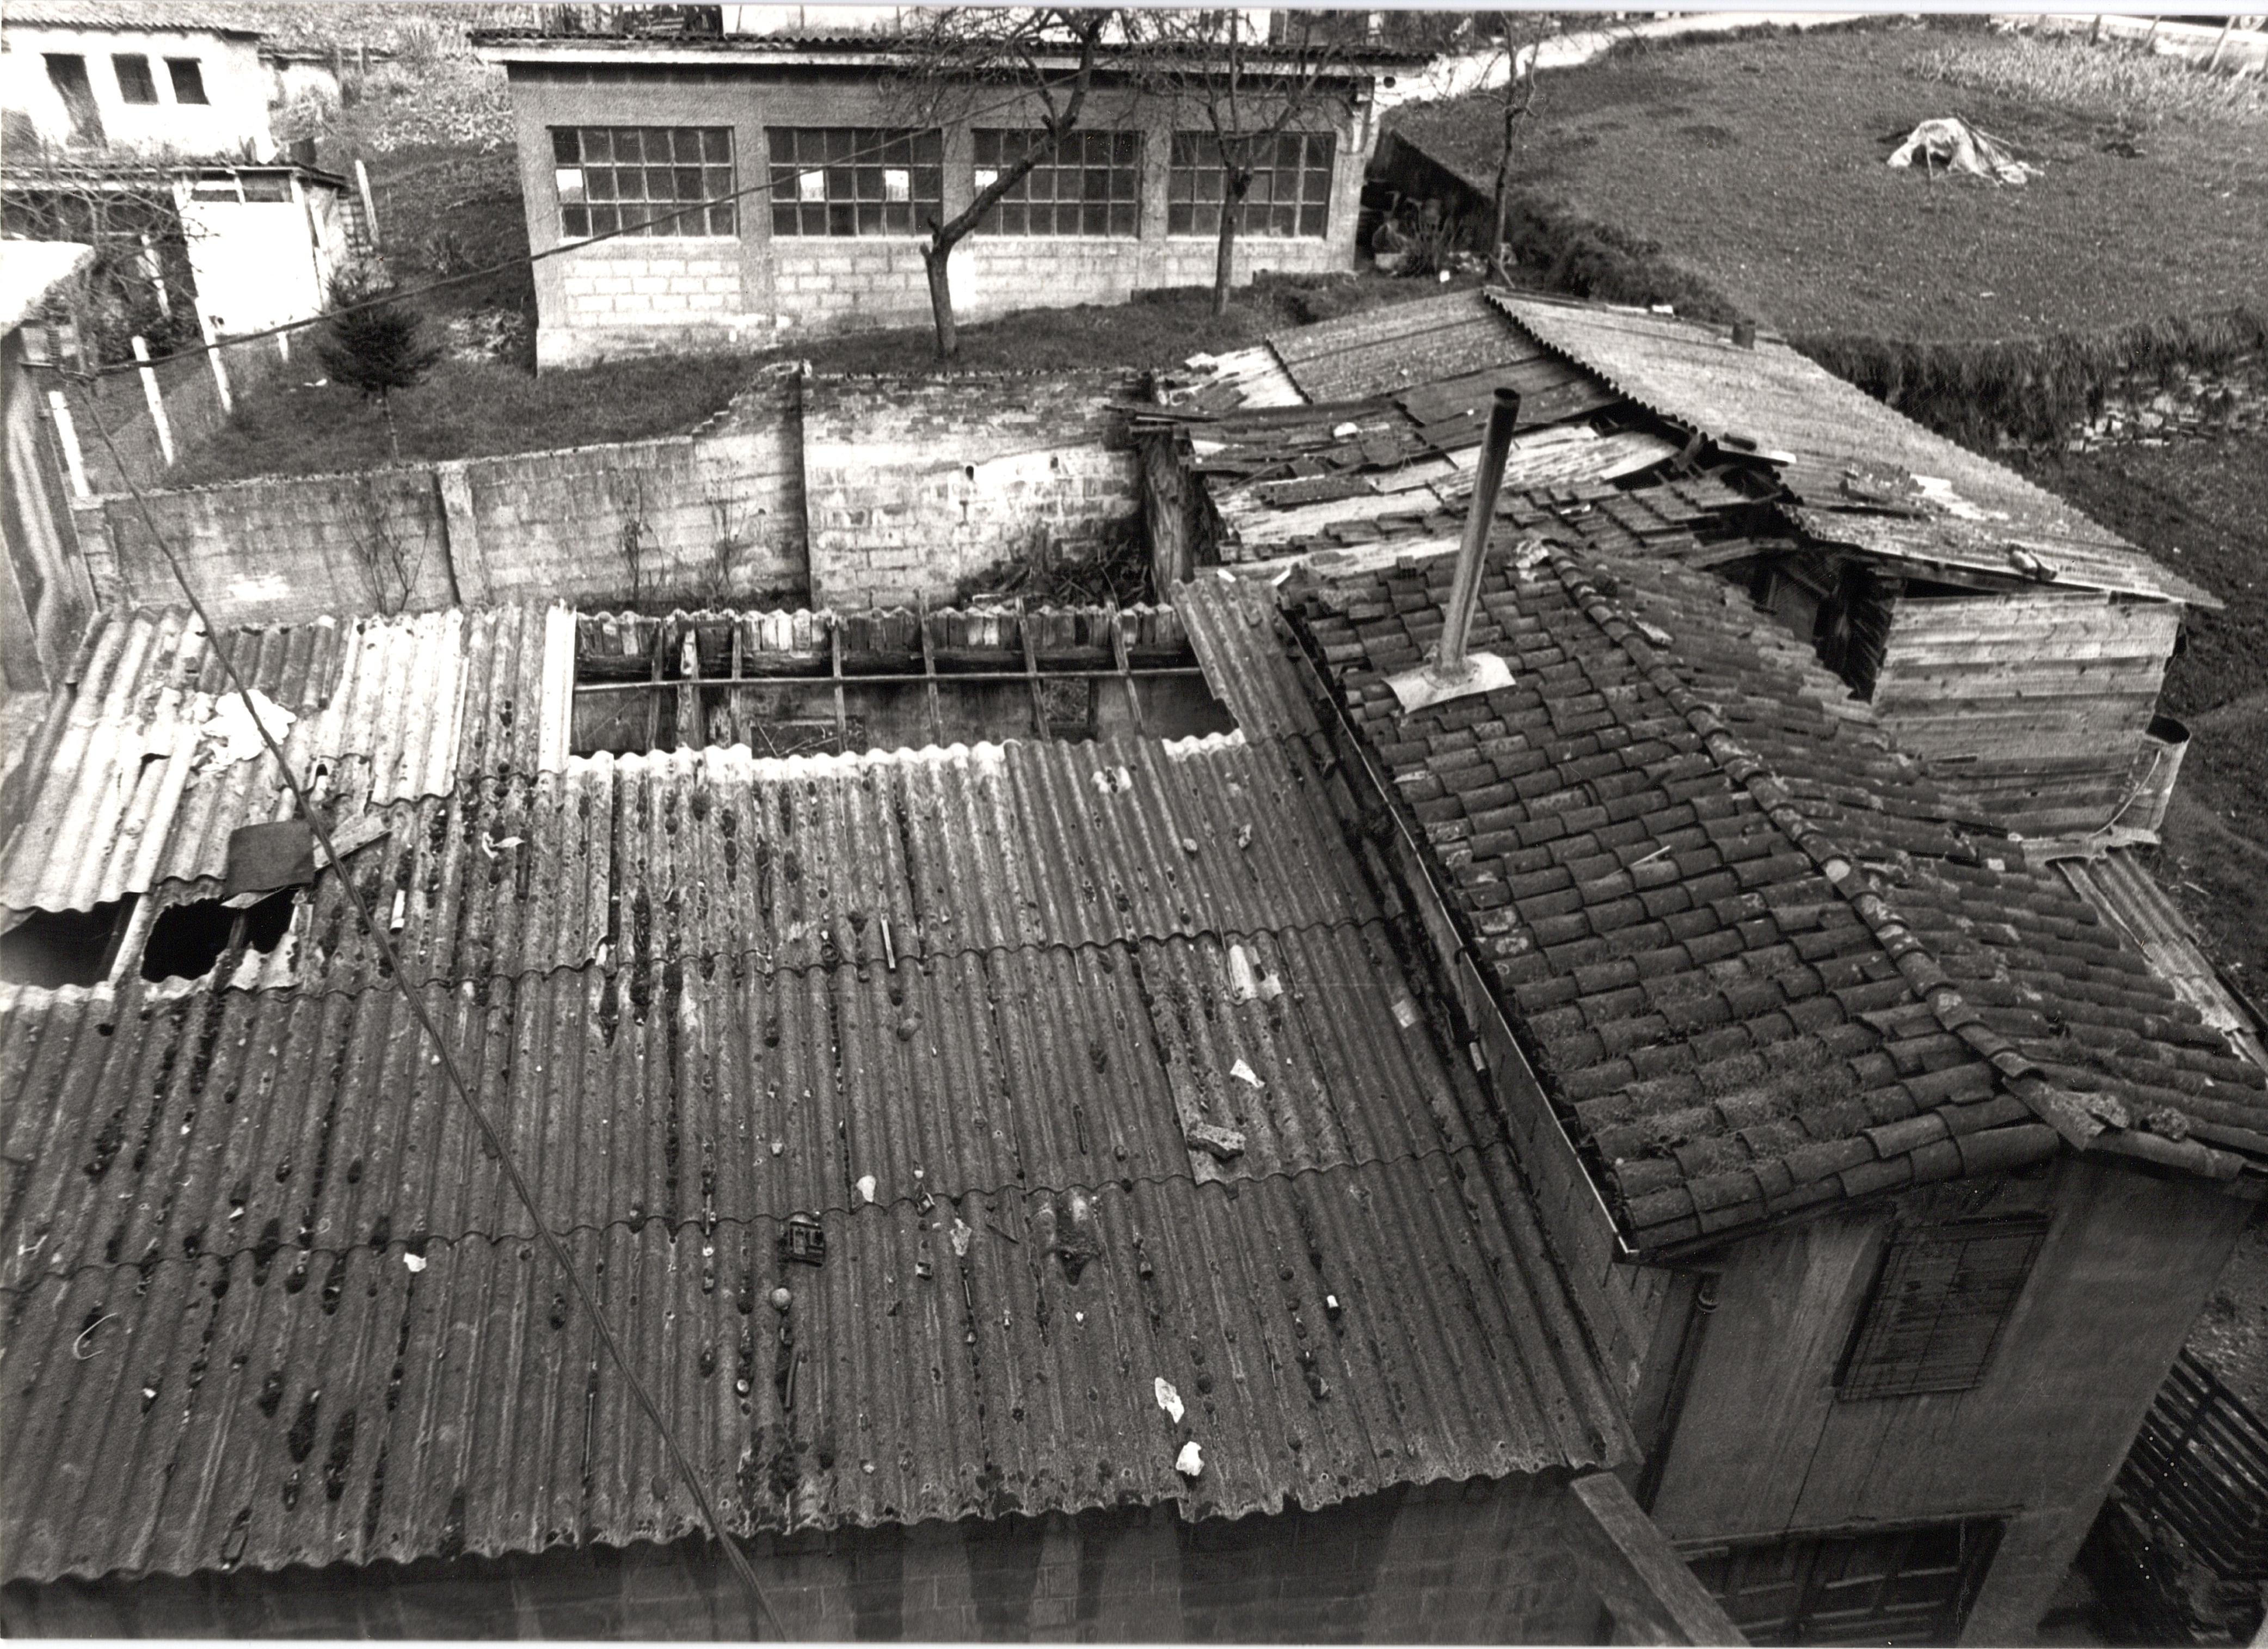 Se ven los tejados de unas chabolas, también el tejado de un edificio más robusto, con un tejado de teja y una pequeña chimenea de tubo metálico. A la derecha del conjunto de estructuras hay una parcela de hierba con una pequeña huerta. La fotografía es en blanco y negro.